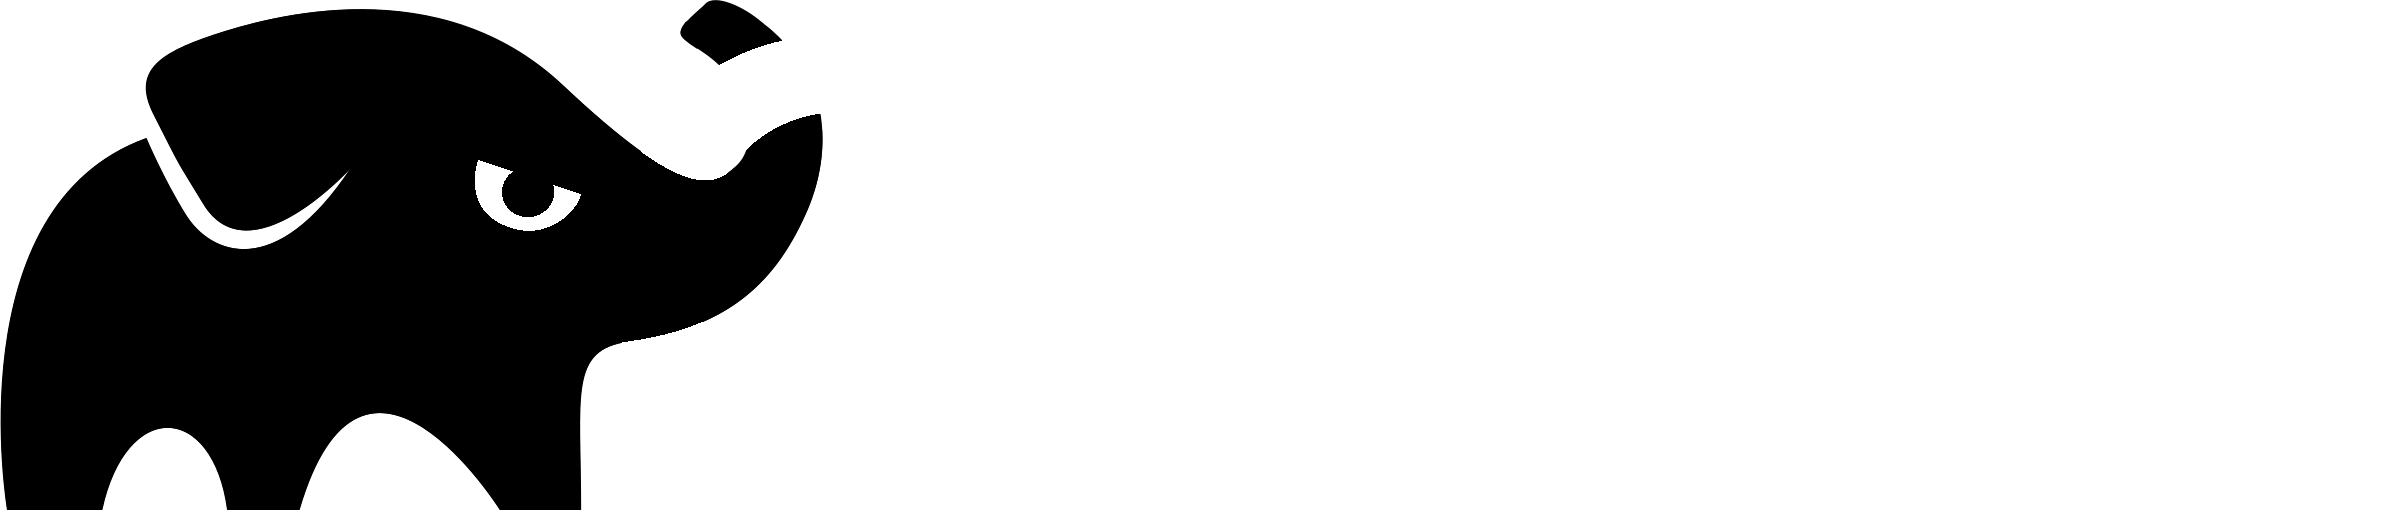 Gradle Logo - Gradle Logo PNG Transparent & SVG Vector